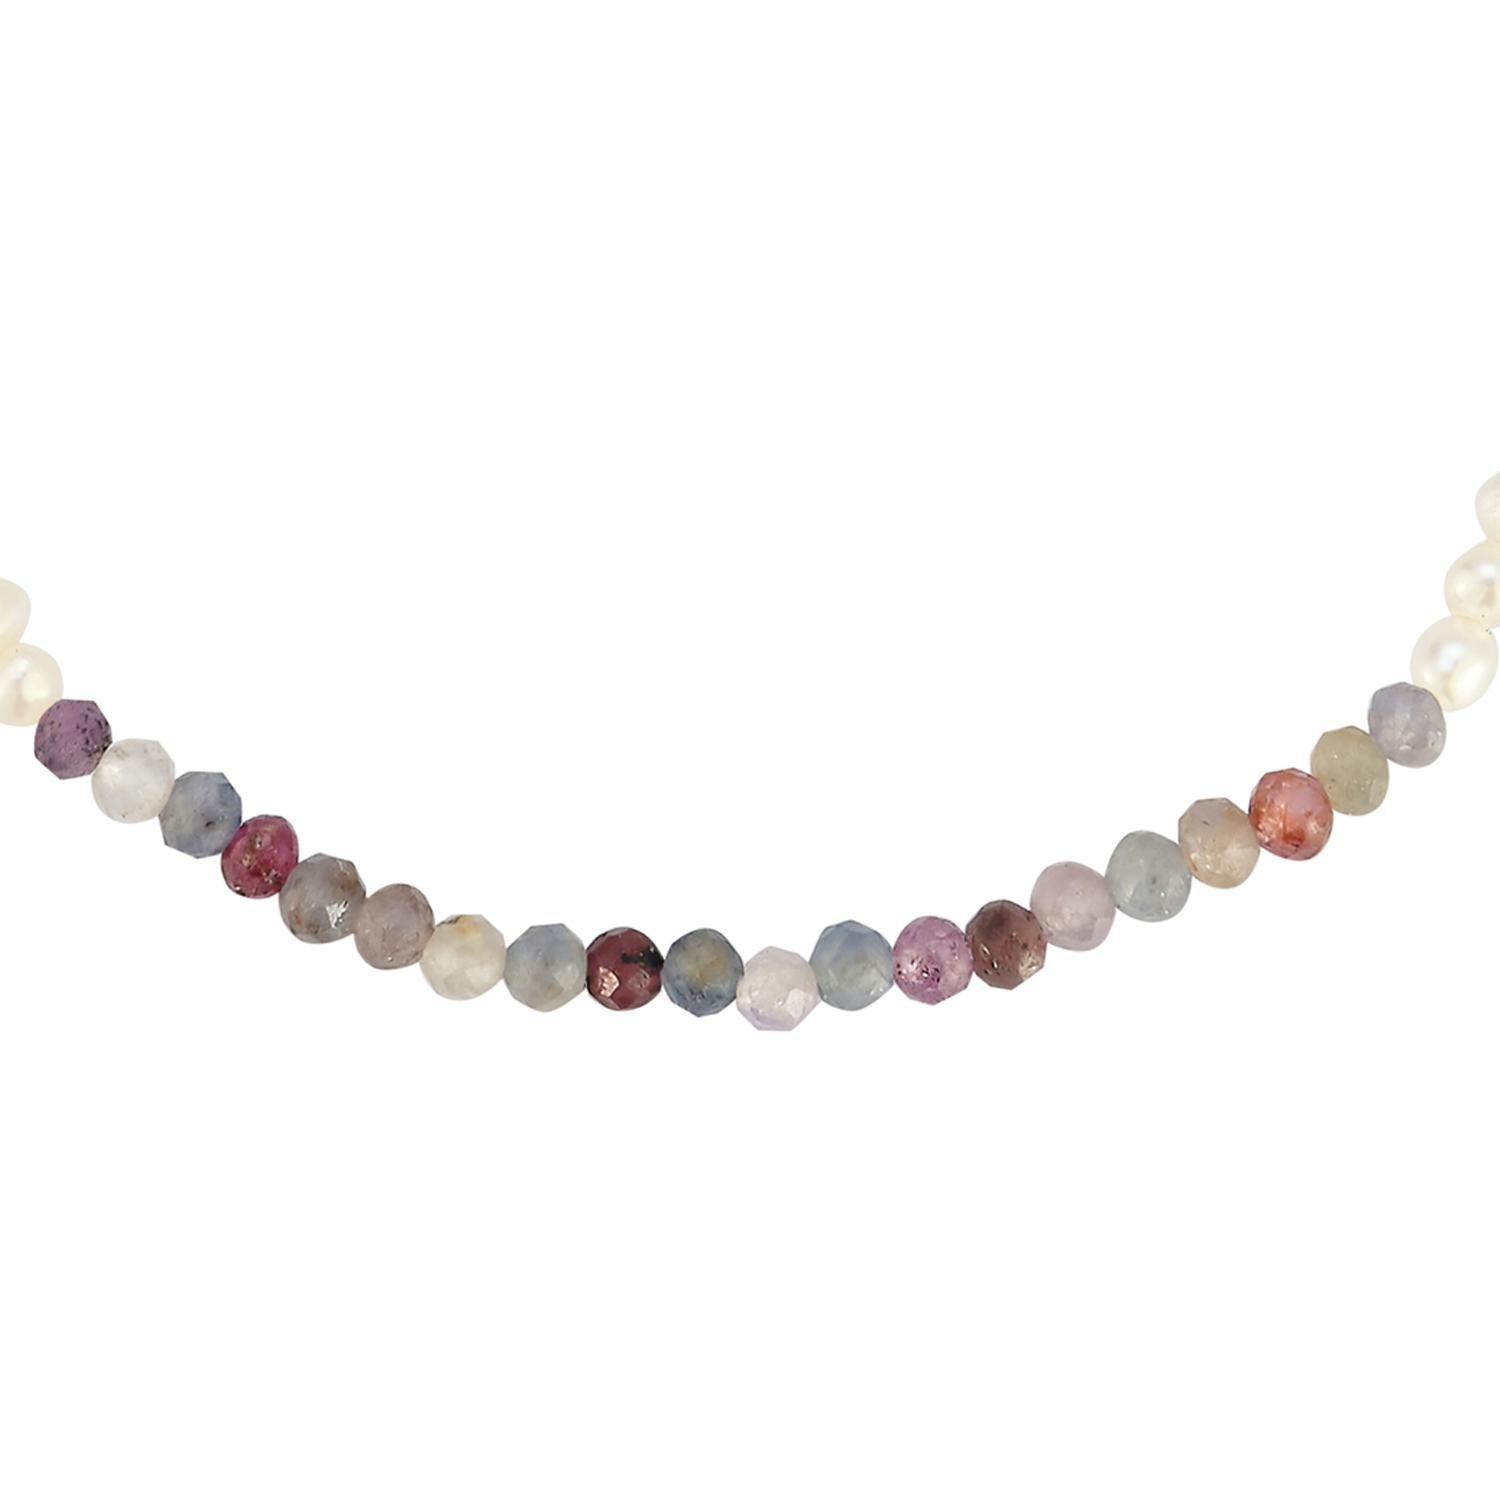 Il ne s'agit pas d'un bracelet de perles ordinaire, mais d'une touche de couleur sous la forme d'un bloc de couleurs avec des pierres semi-précieuses facettées multicolores (saphir et rubis). Une super pièce décontractée à superposer pour toutes les